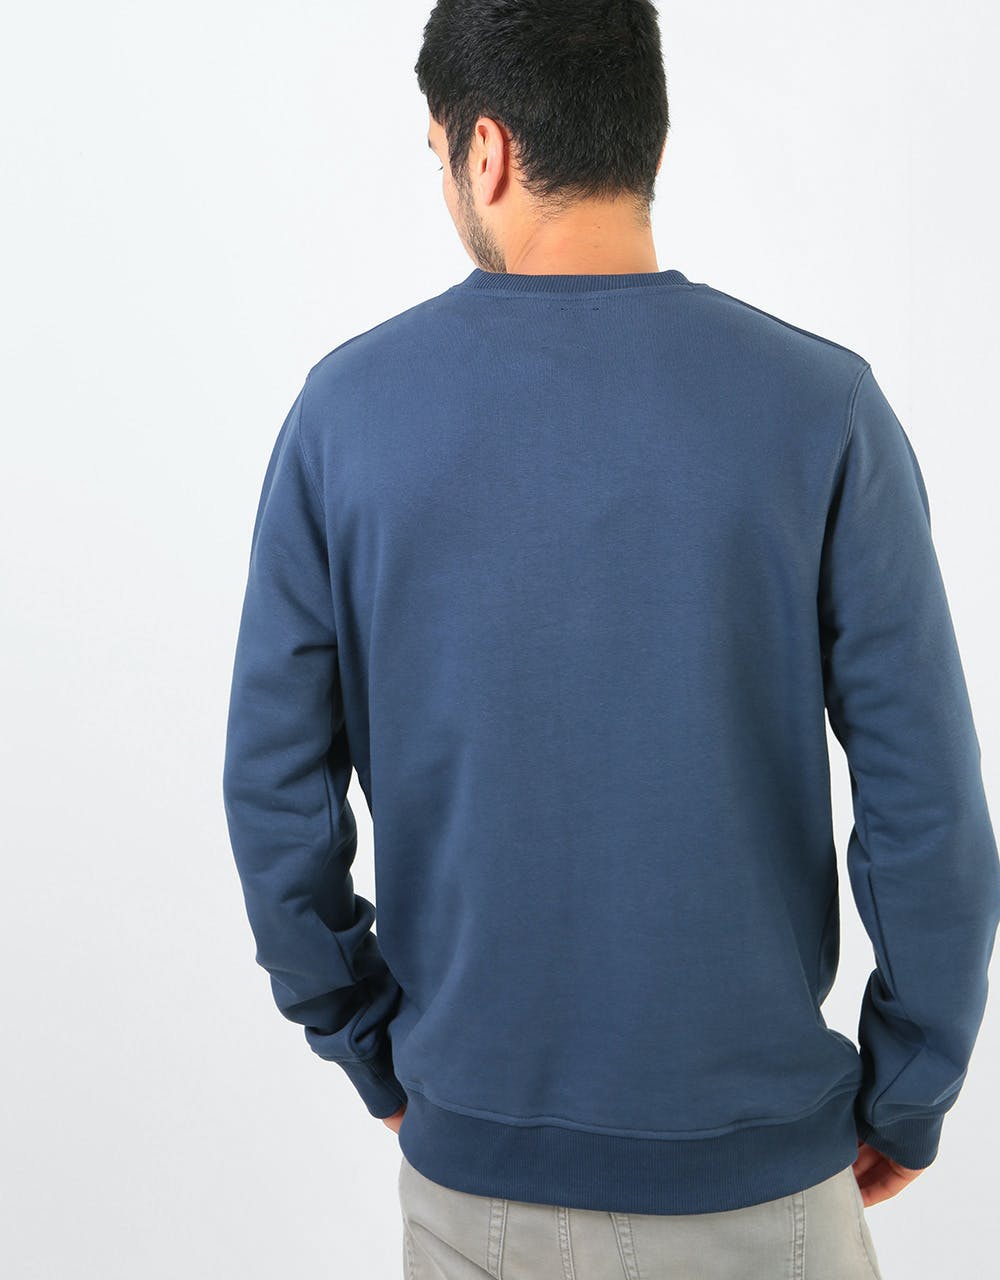 Dickies Seabrook Sweatshirt - Navy Blue